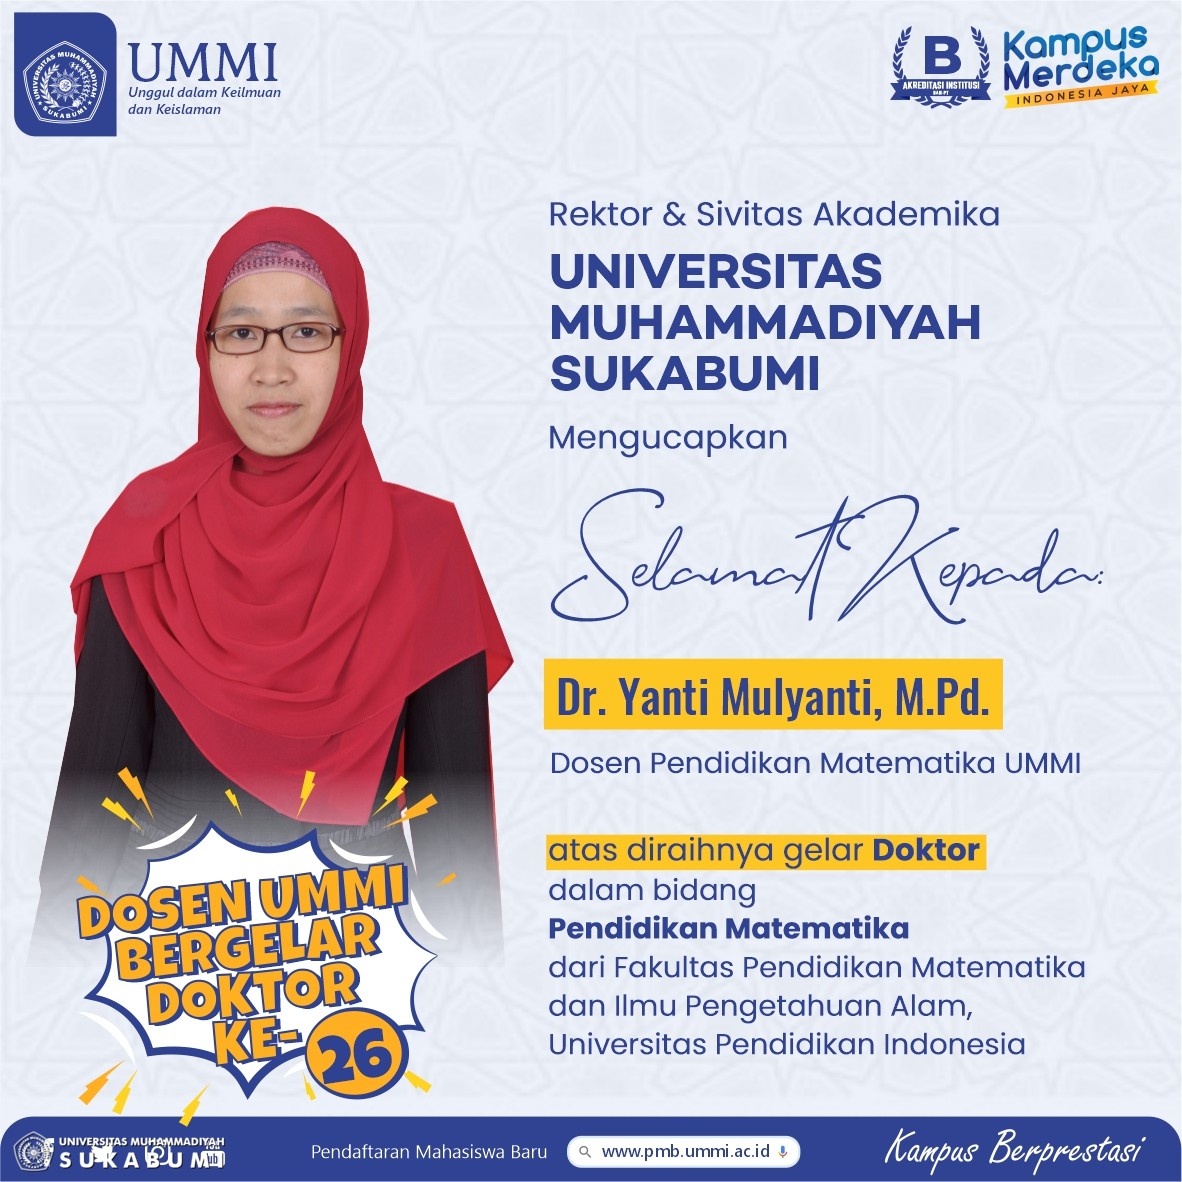 Dr. Yanti Mulyanti, M.Pd menjadi dosen UMMI bergelar doktor ke-26